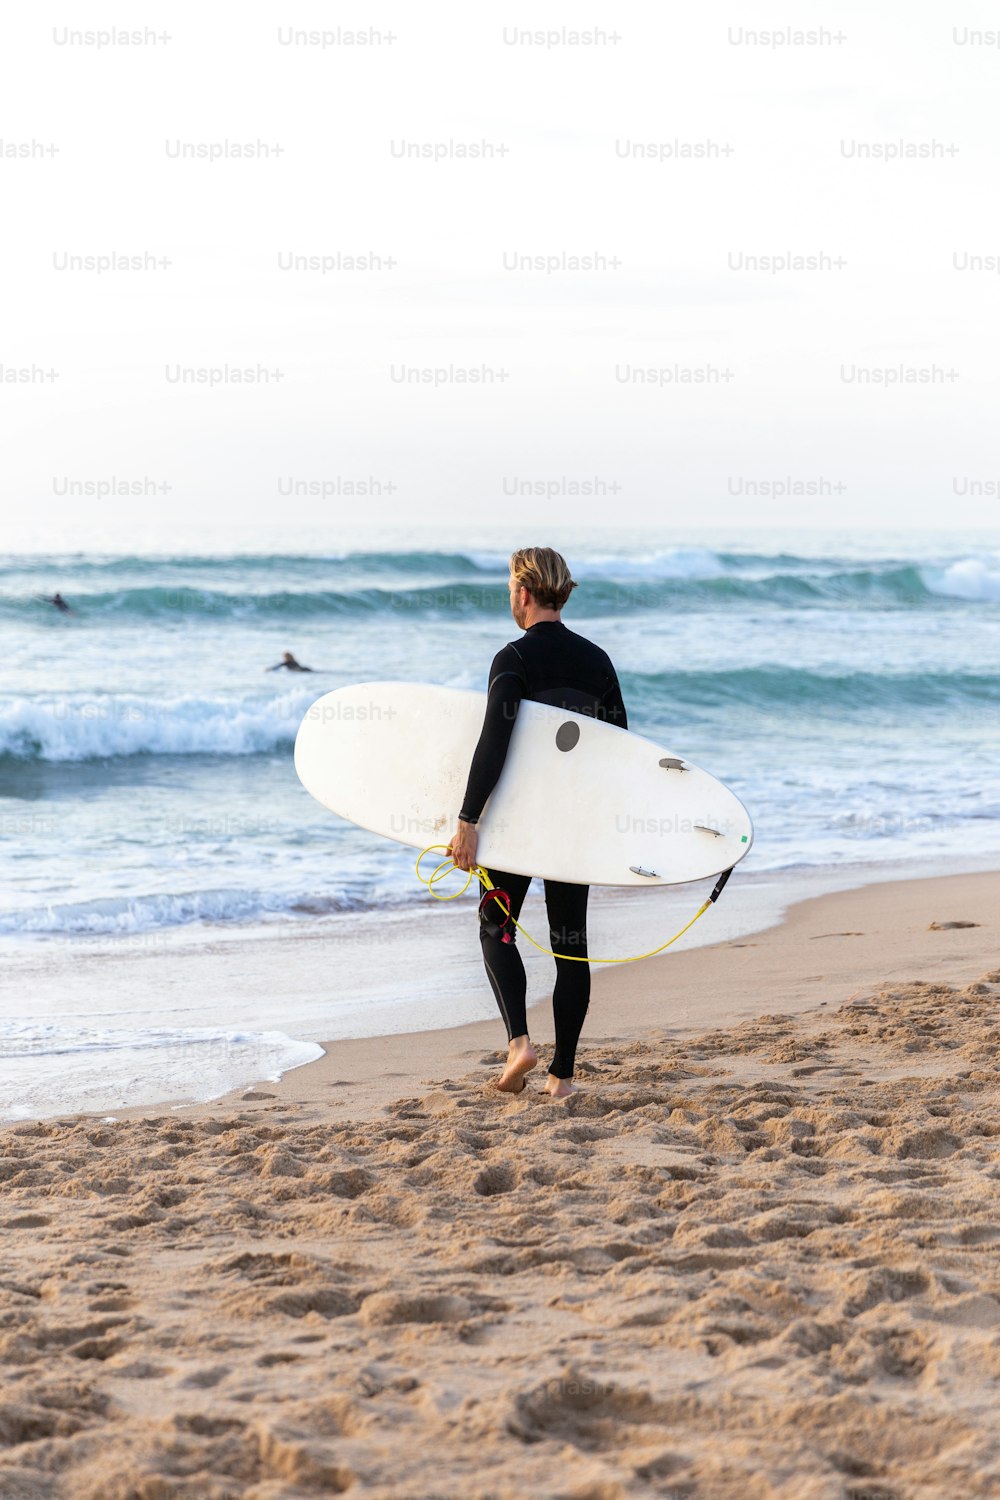 Ein Mann in einem Neoprenanzug, der ein Surfbrett am Strand trägt